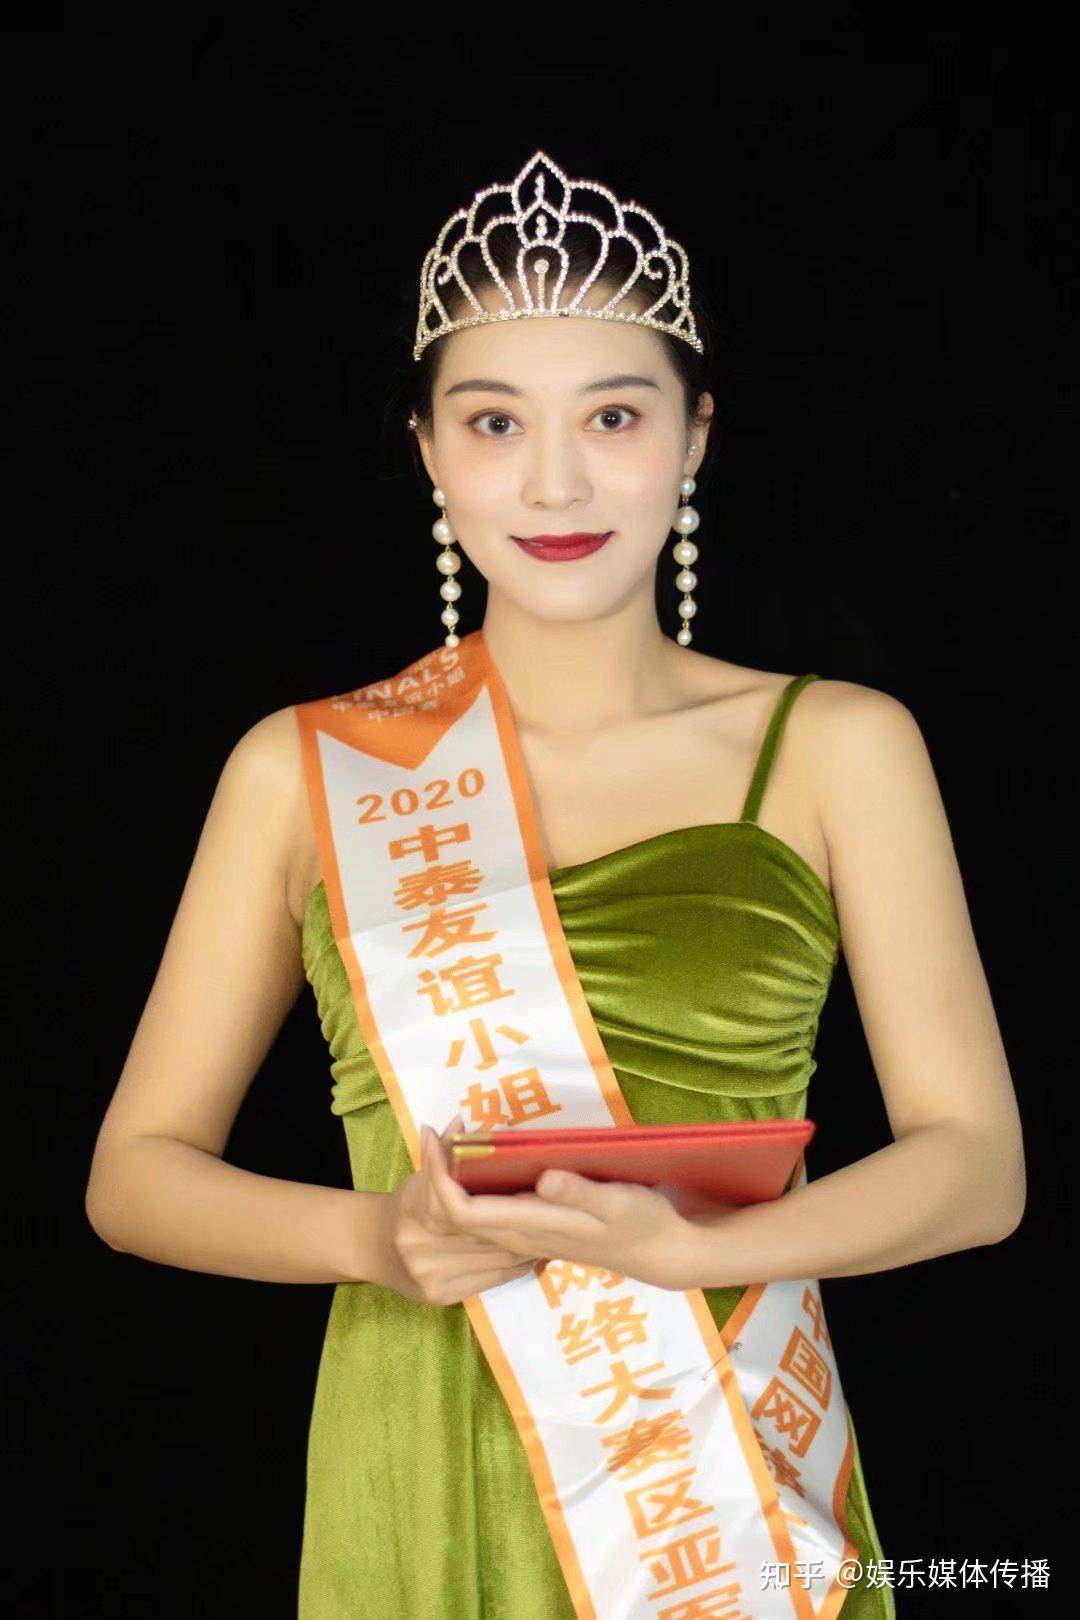 2020年中泰友谊小姐中国网络排位赛:亚军2014年中国生态旅游小姐全国